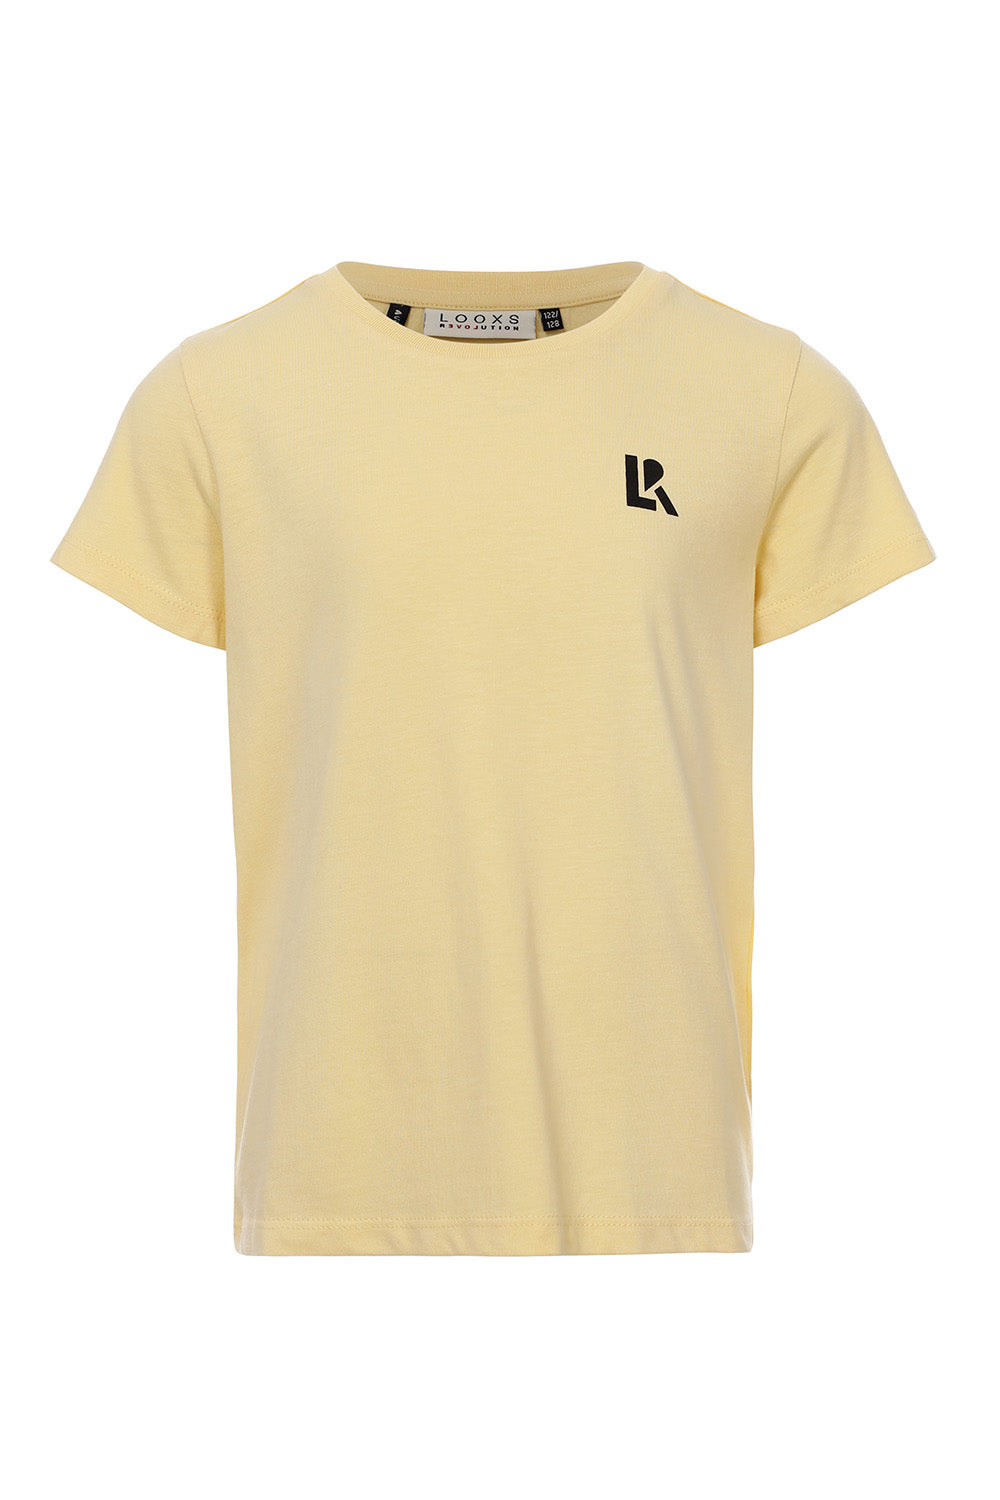 Meisjes T-Shirt van LOOXS 10sixteen in de kleur Soft yellow in maat 176.